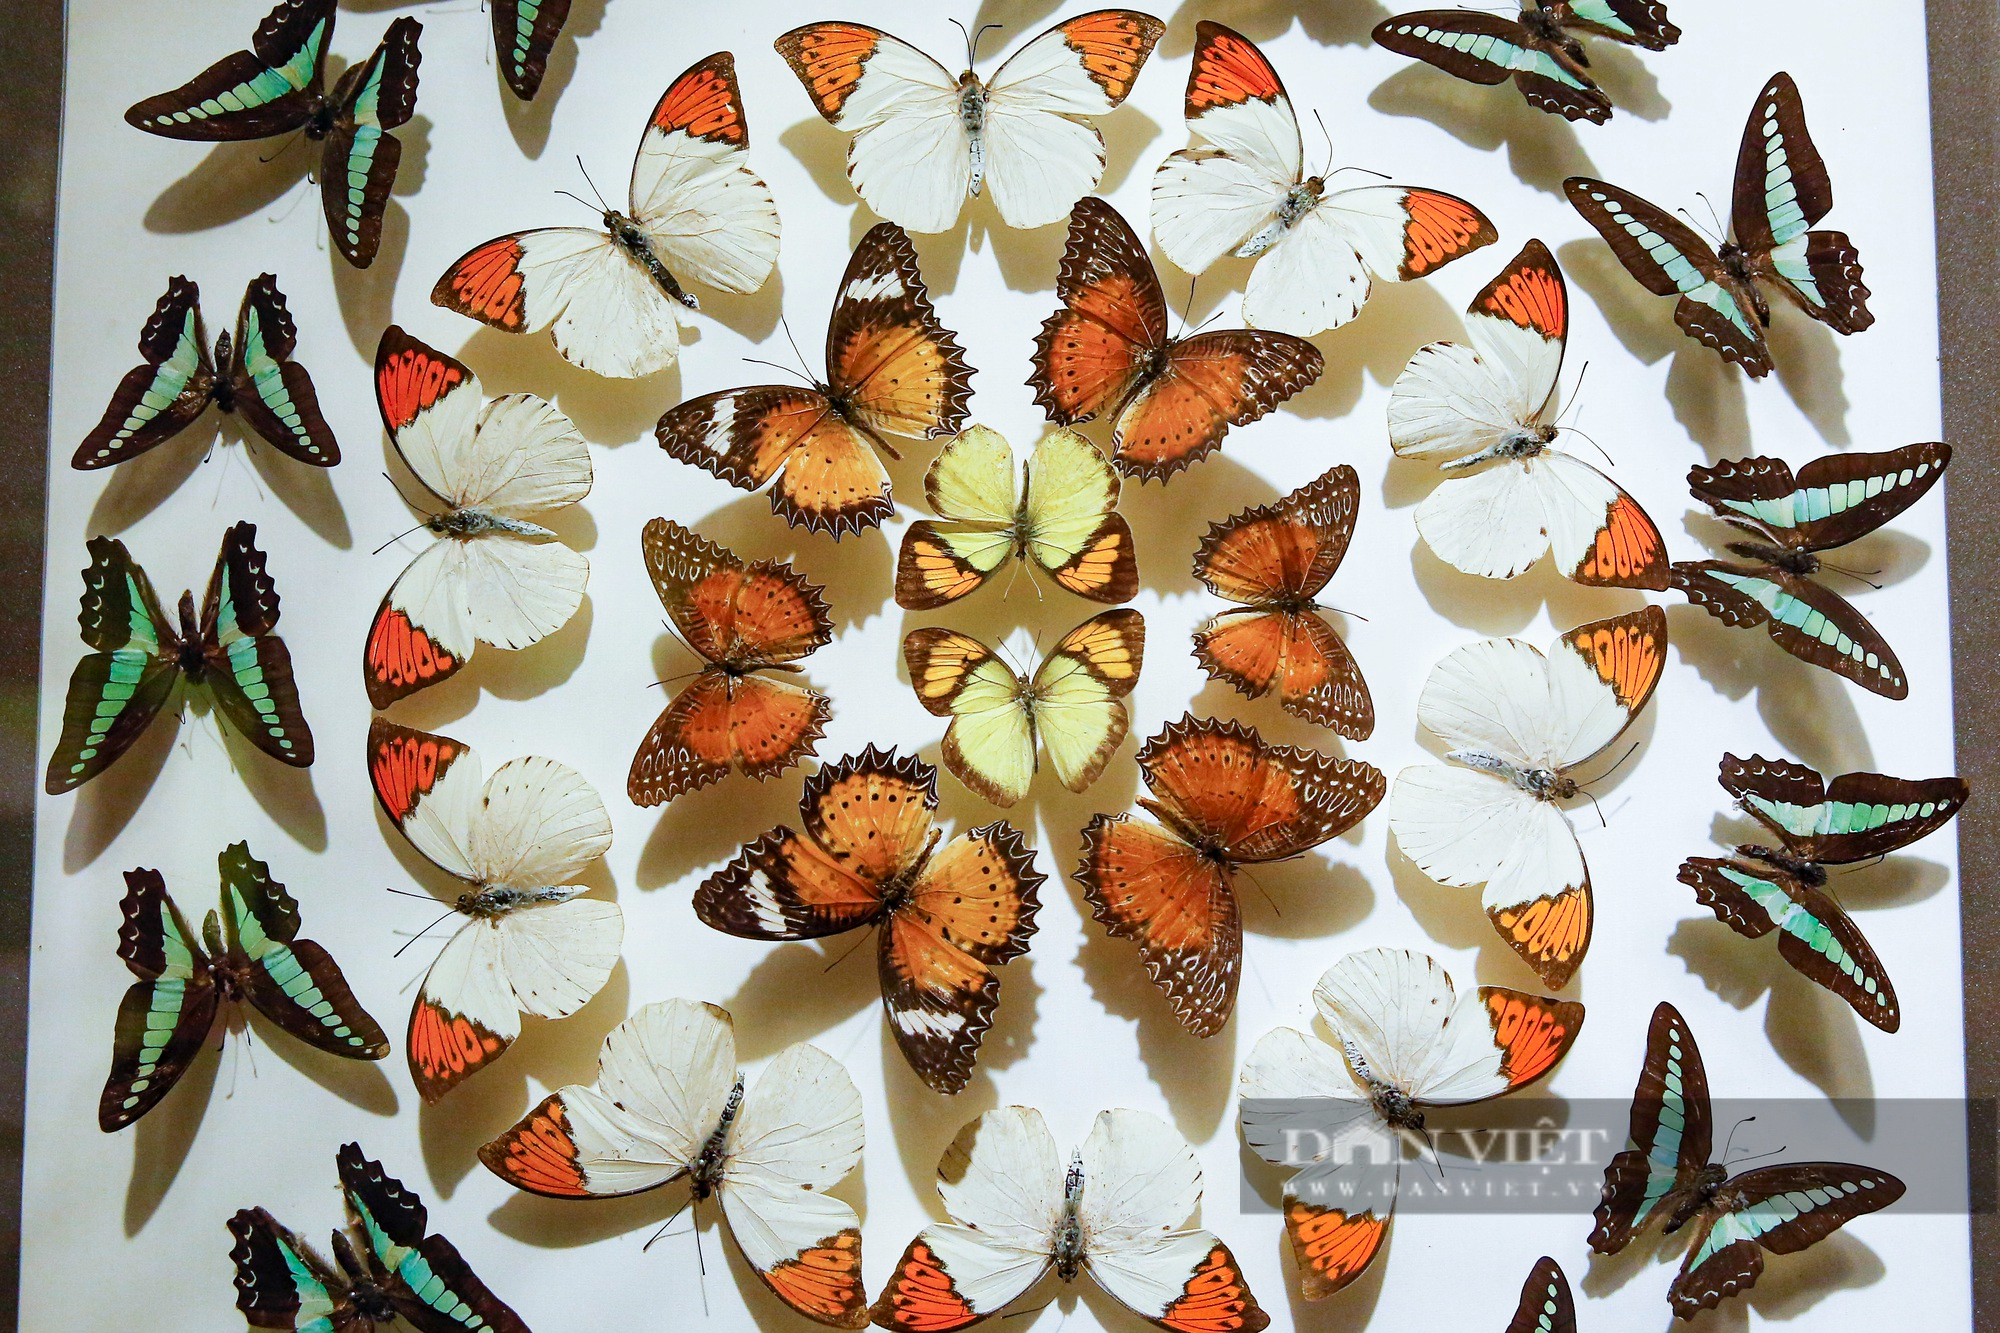 Ngắm bộ sưu tập bướm quý hiếm đẹp nhất Việt Nam - Ảnh 8.